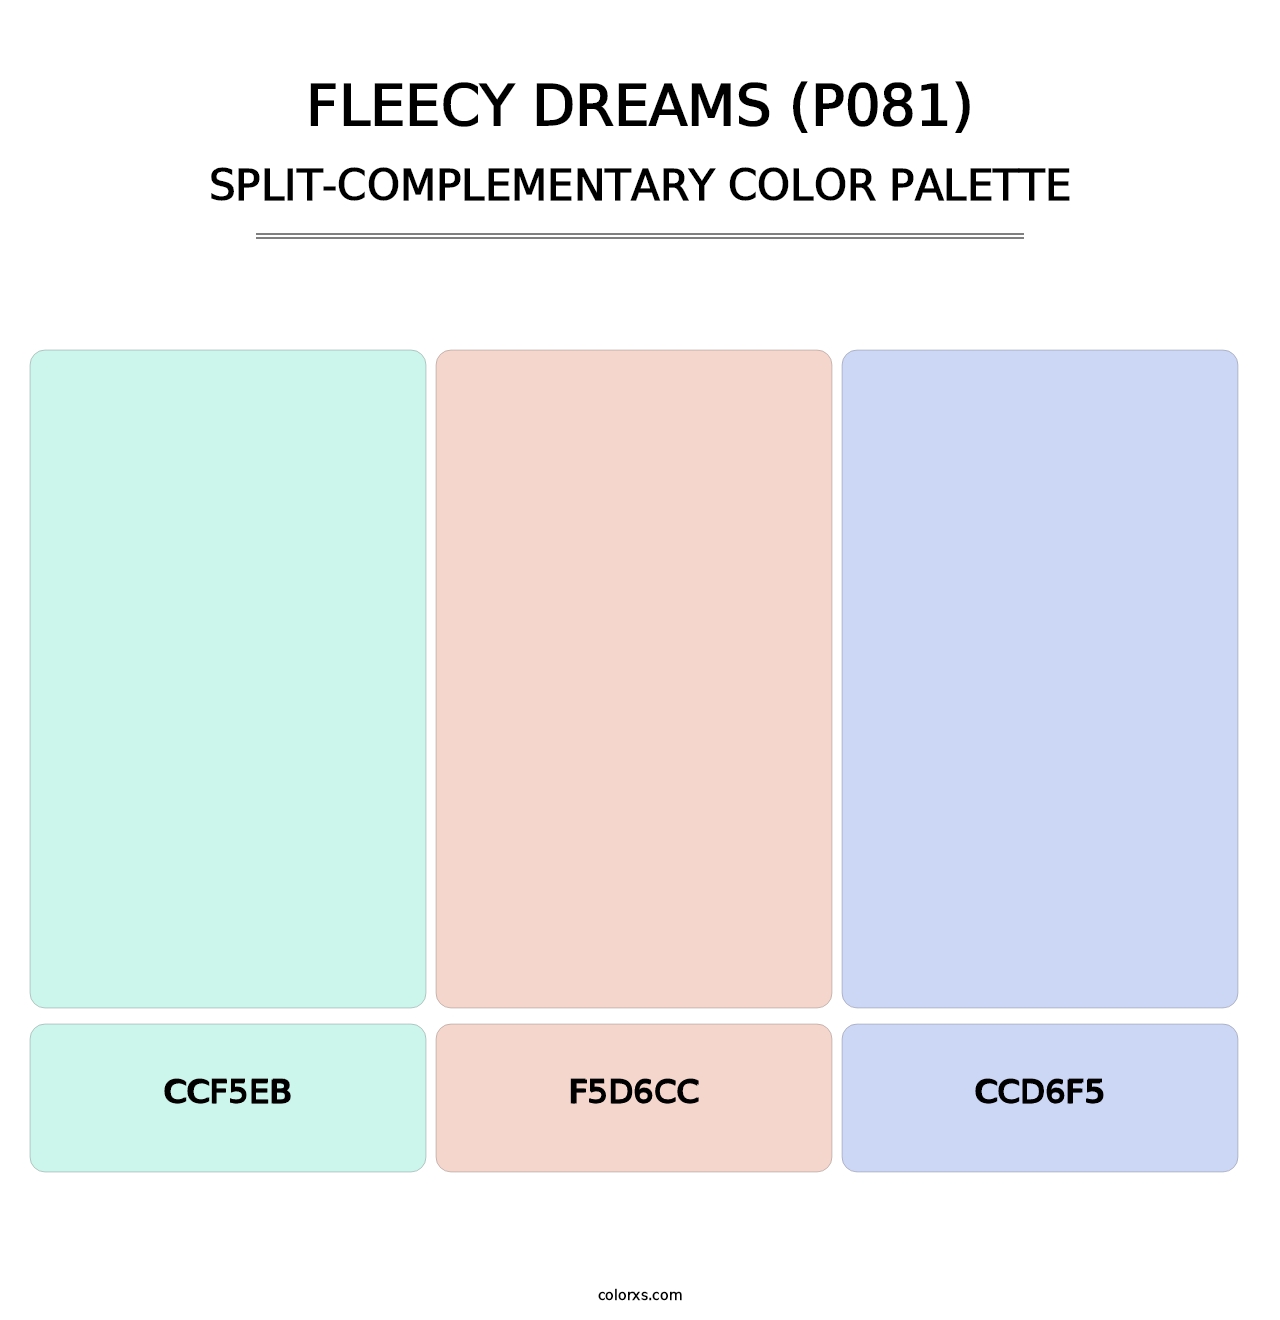 Fleecy Dreams (P081) - Split-Complementary Color Palette